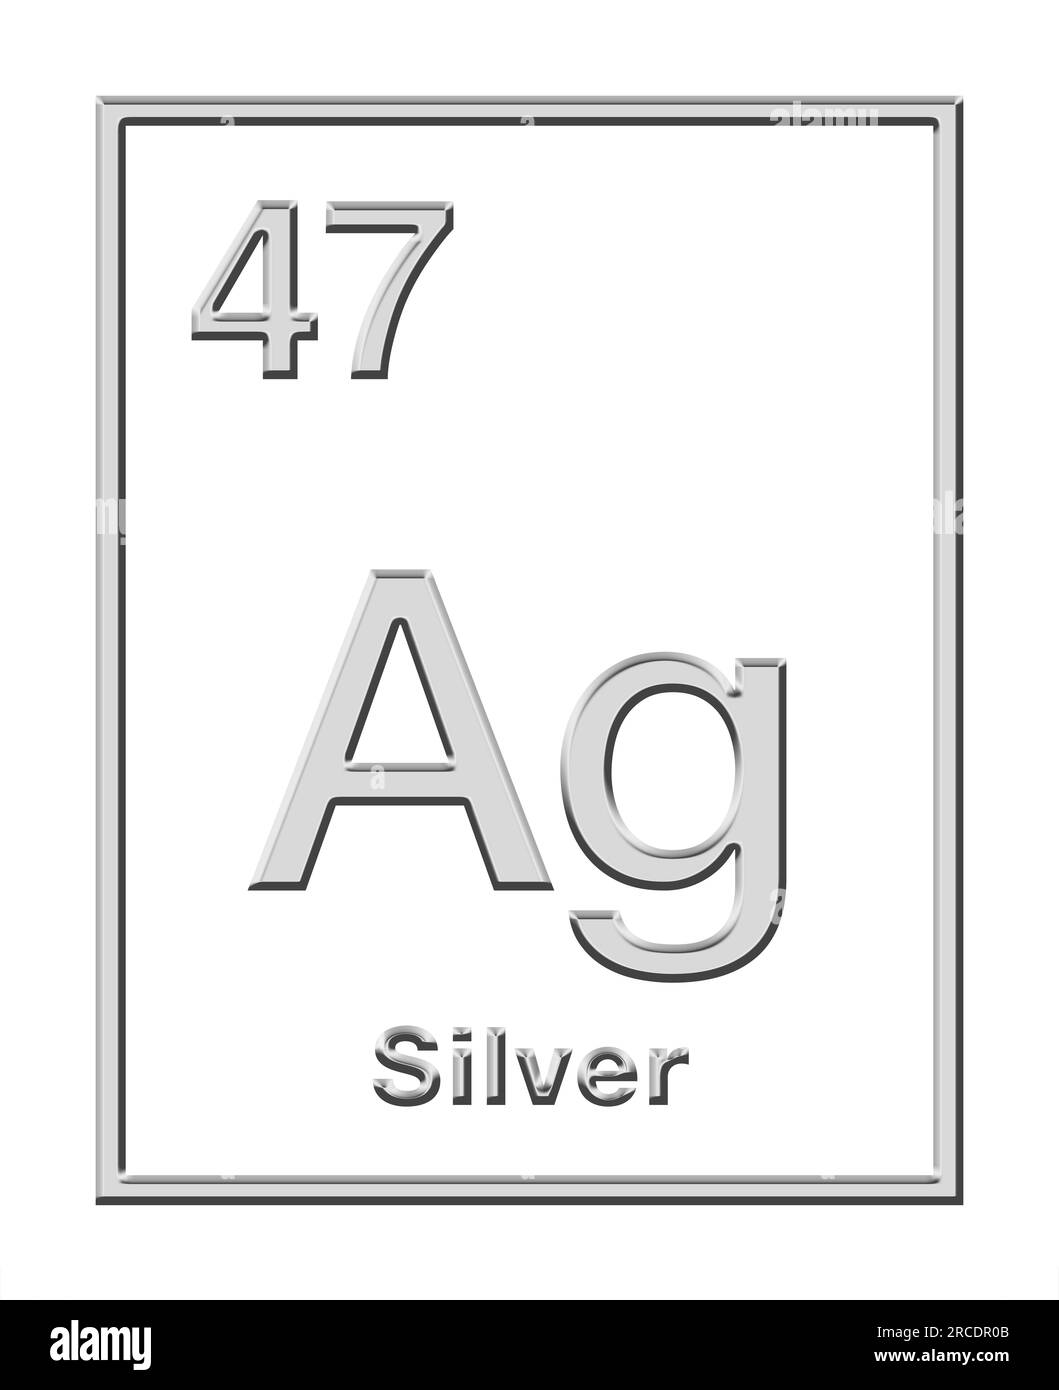 Silber, chemisches Element aus Periodensystem, mit Reliefform. Edelmetall mit chemischem Symbol AG (lateinisches Argentum) und Atomzahl 47. Stockfoto